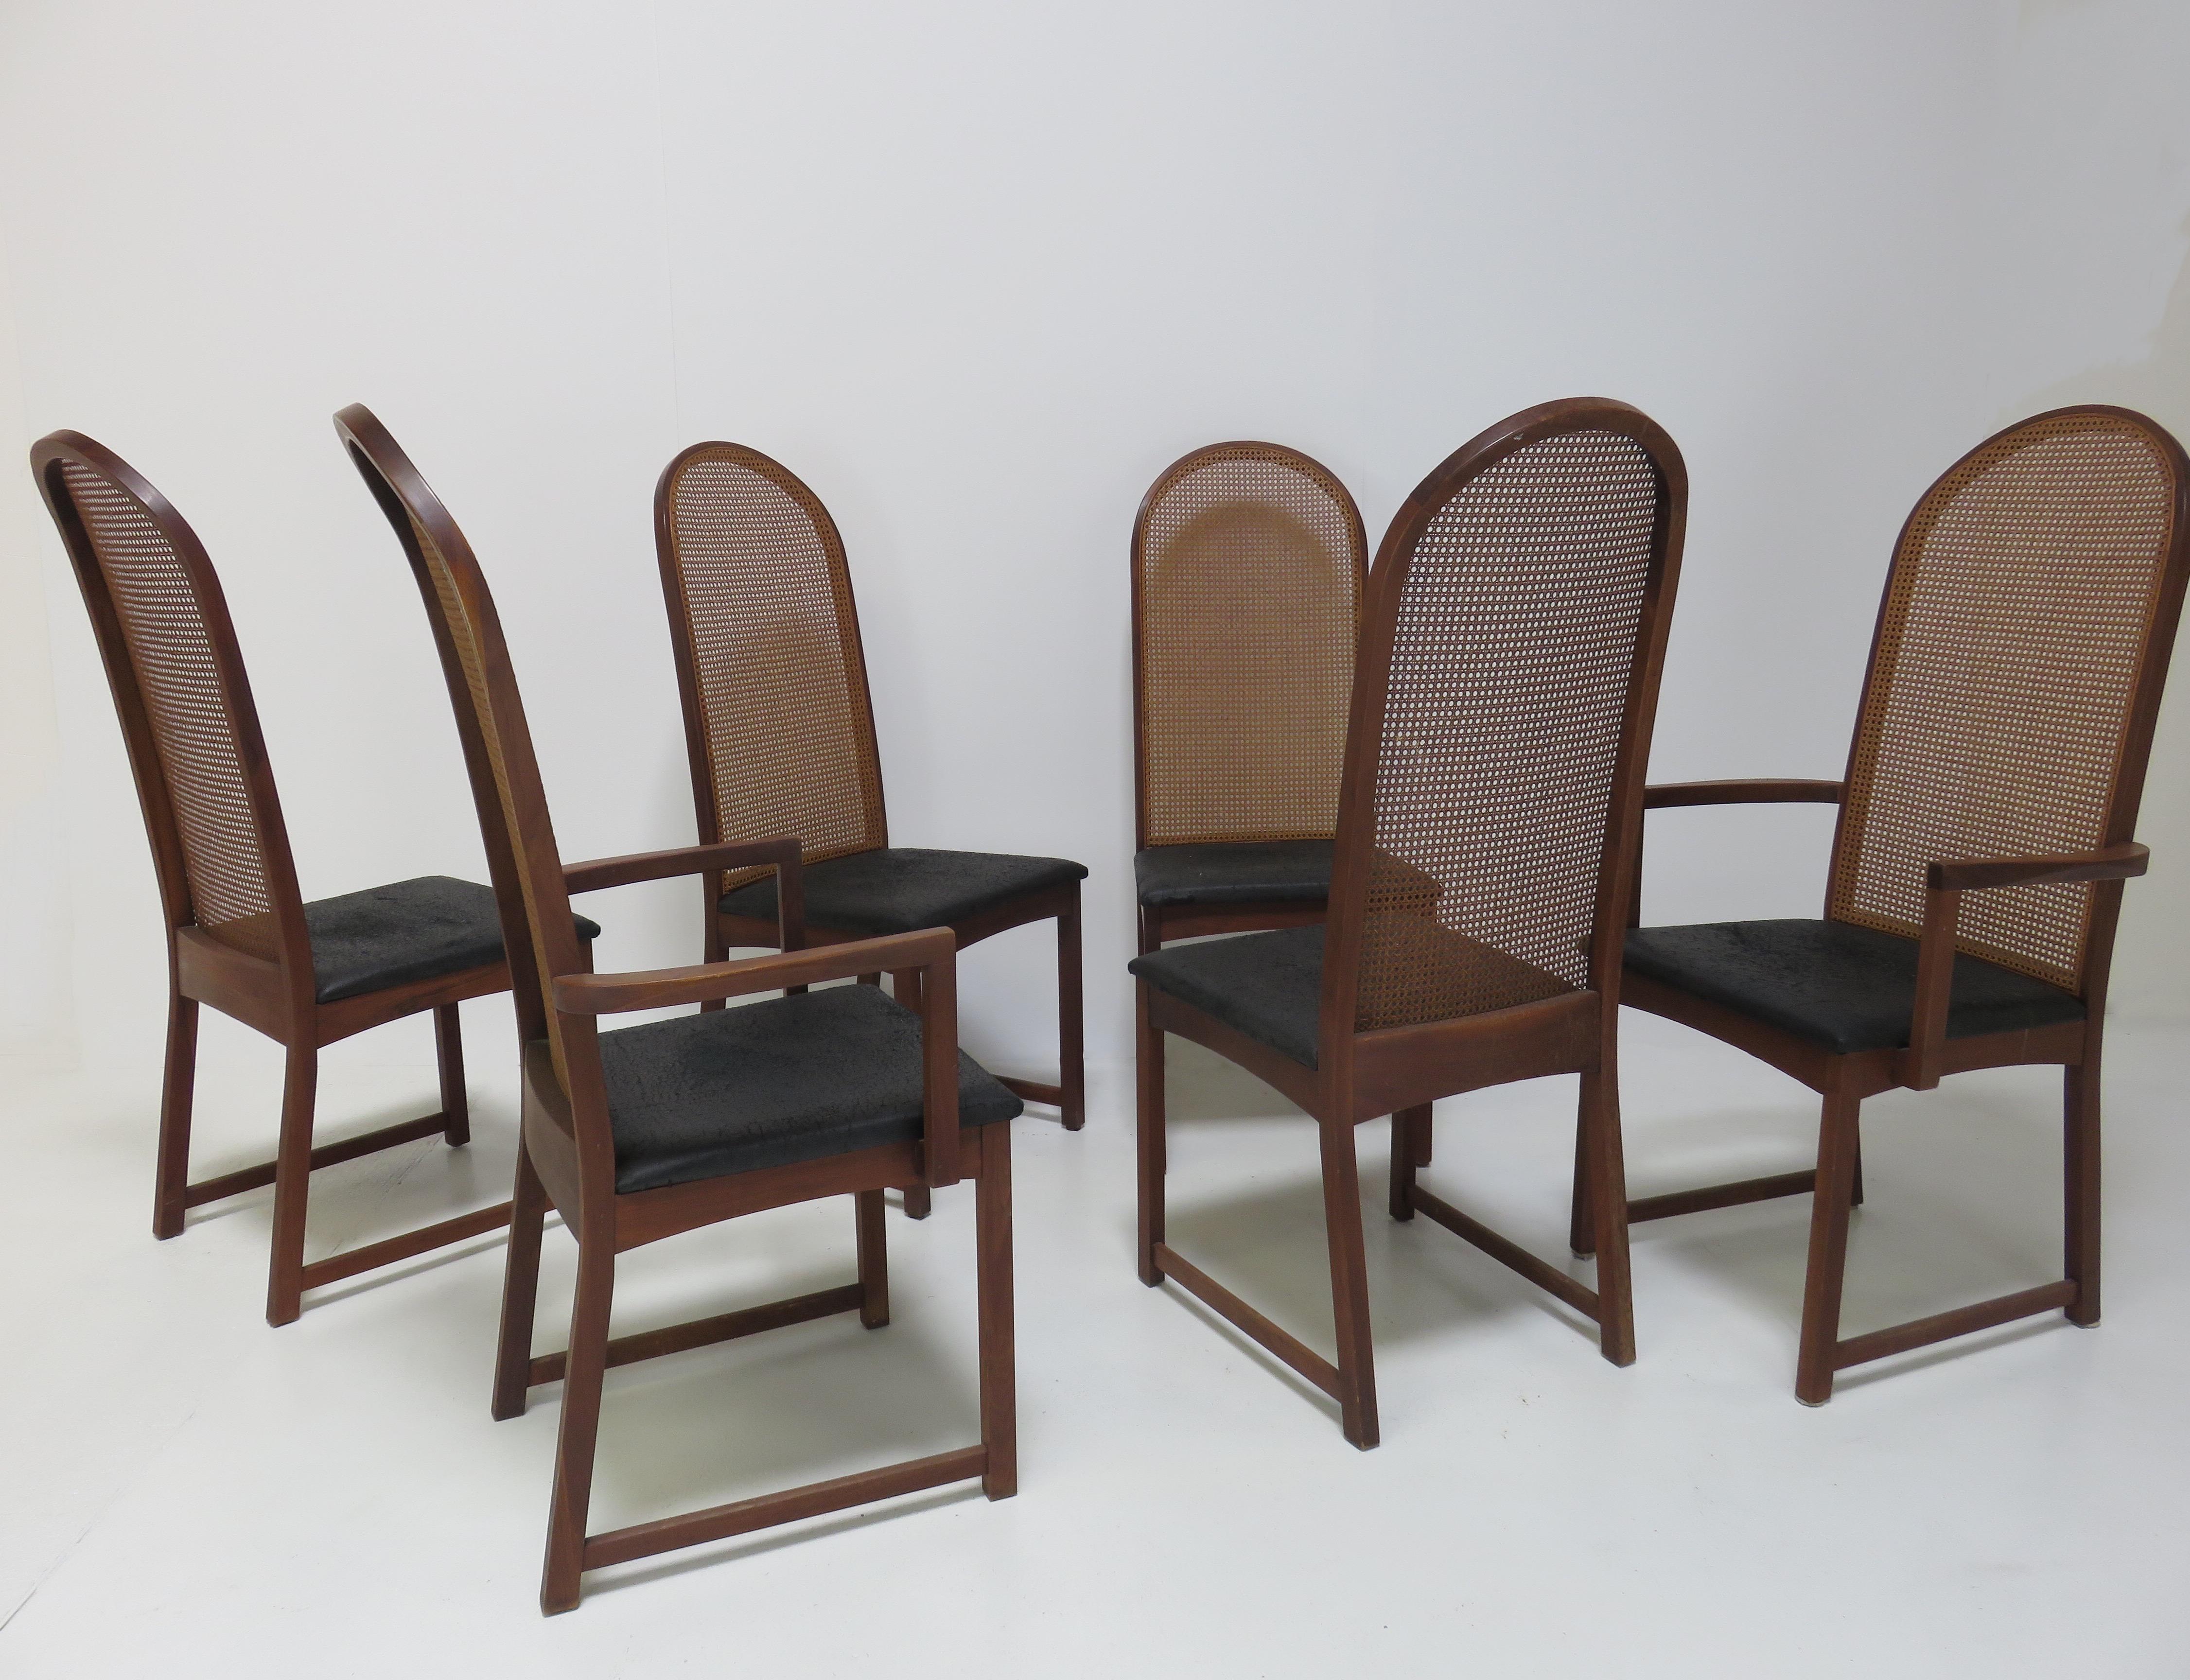 Ein Satz von sechs Esszimmerstühlen von Milo Baughman. Bestehend aus vier Beistellstühlen und zwei Sesseln, jeweils mit Rückenlehnen aus Schilfrohr und Sitzen aus schwarzem Vinyl mit Mahagonirahmen.